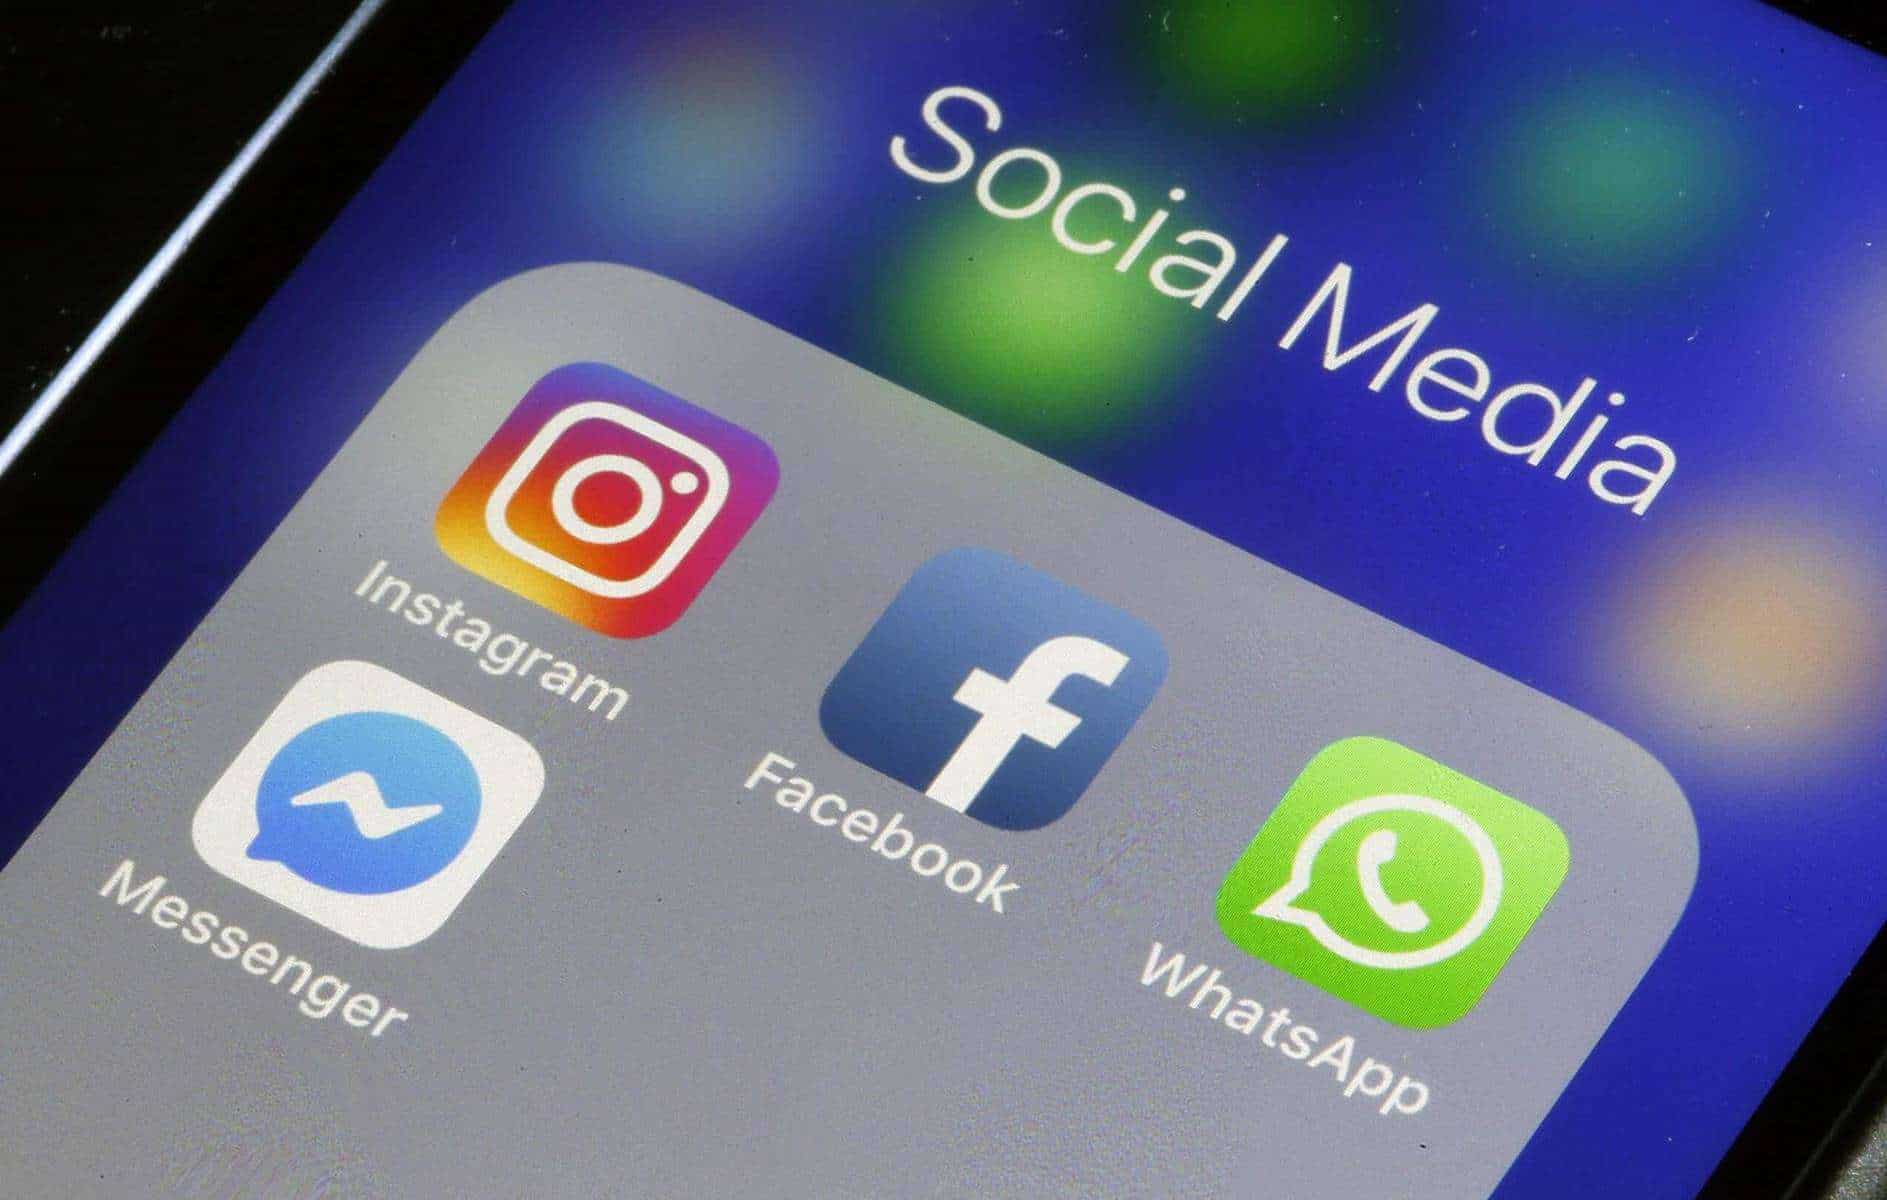 Golpe do dia dos pais: Falsas ofertas em redes sociais fazem 157 mil vítimas